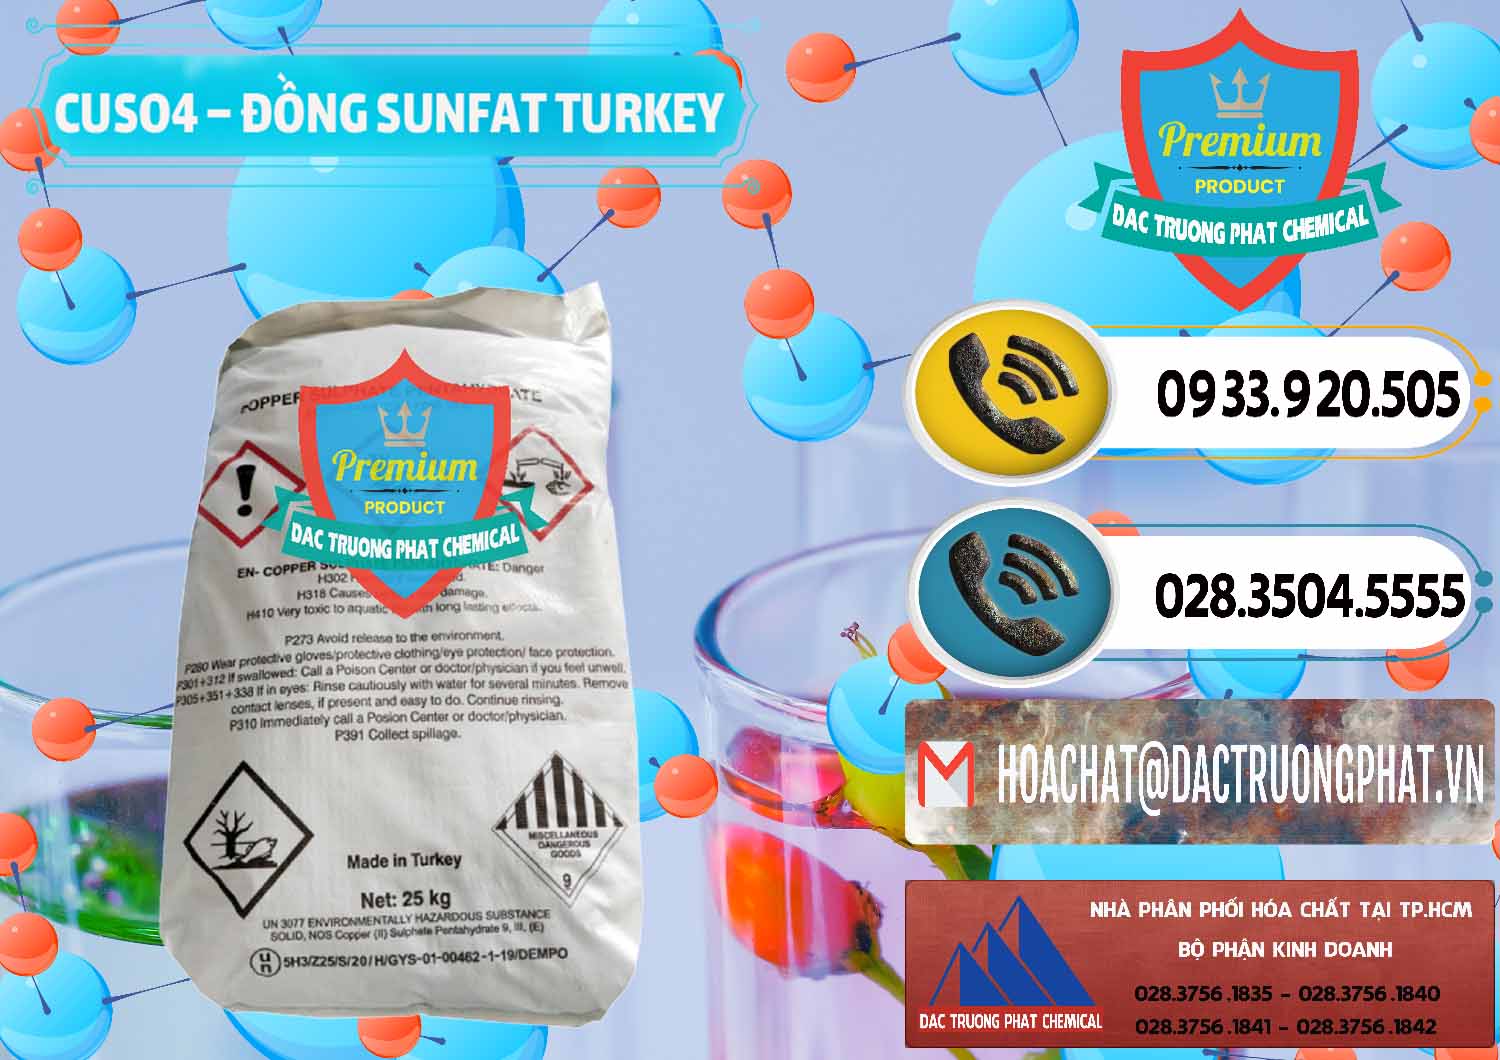 Cty chuyên cung ứng - bán CuSO4 – Đồng Sunfat Thổ Nhĩ Kỳ Turkey - 0481 - Chuyên cung cấp và phân phối hóa chất tại TP.HCM - hoachatdetnhuom.vn